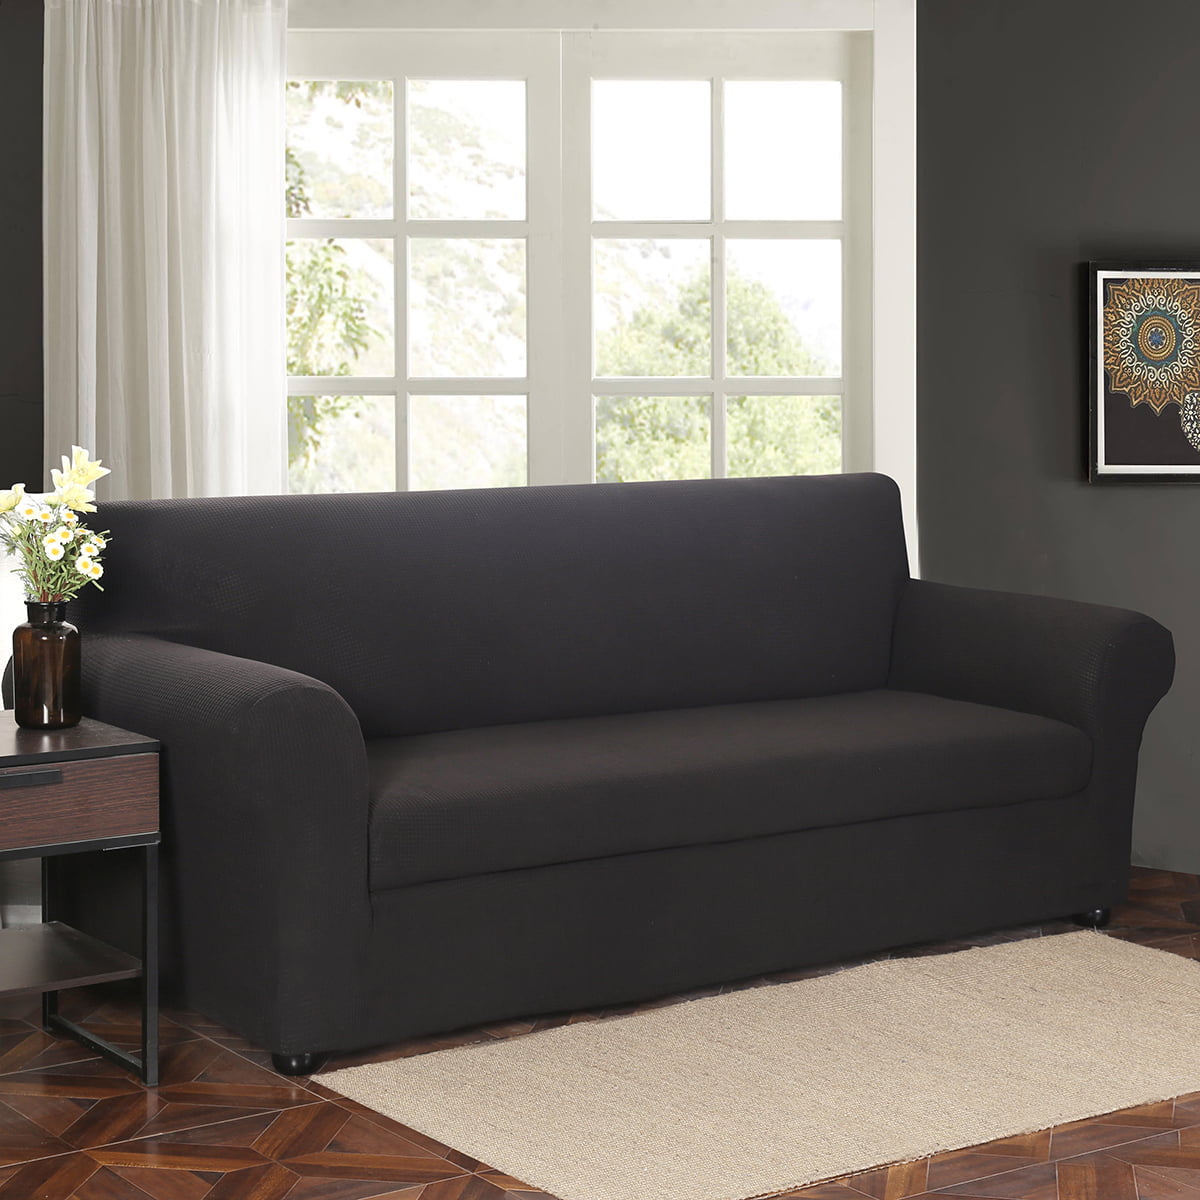 Details about   Velvet Elastic Sofa Covers Sets for Living Room Plush Furniture Corner Slipcover 